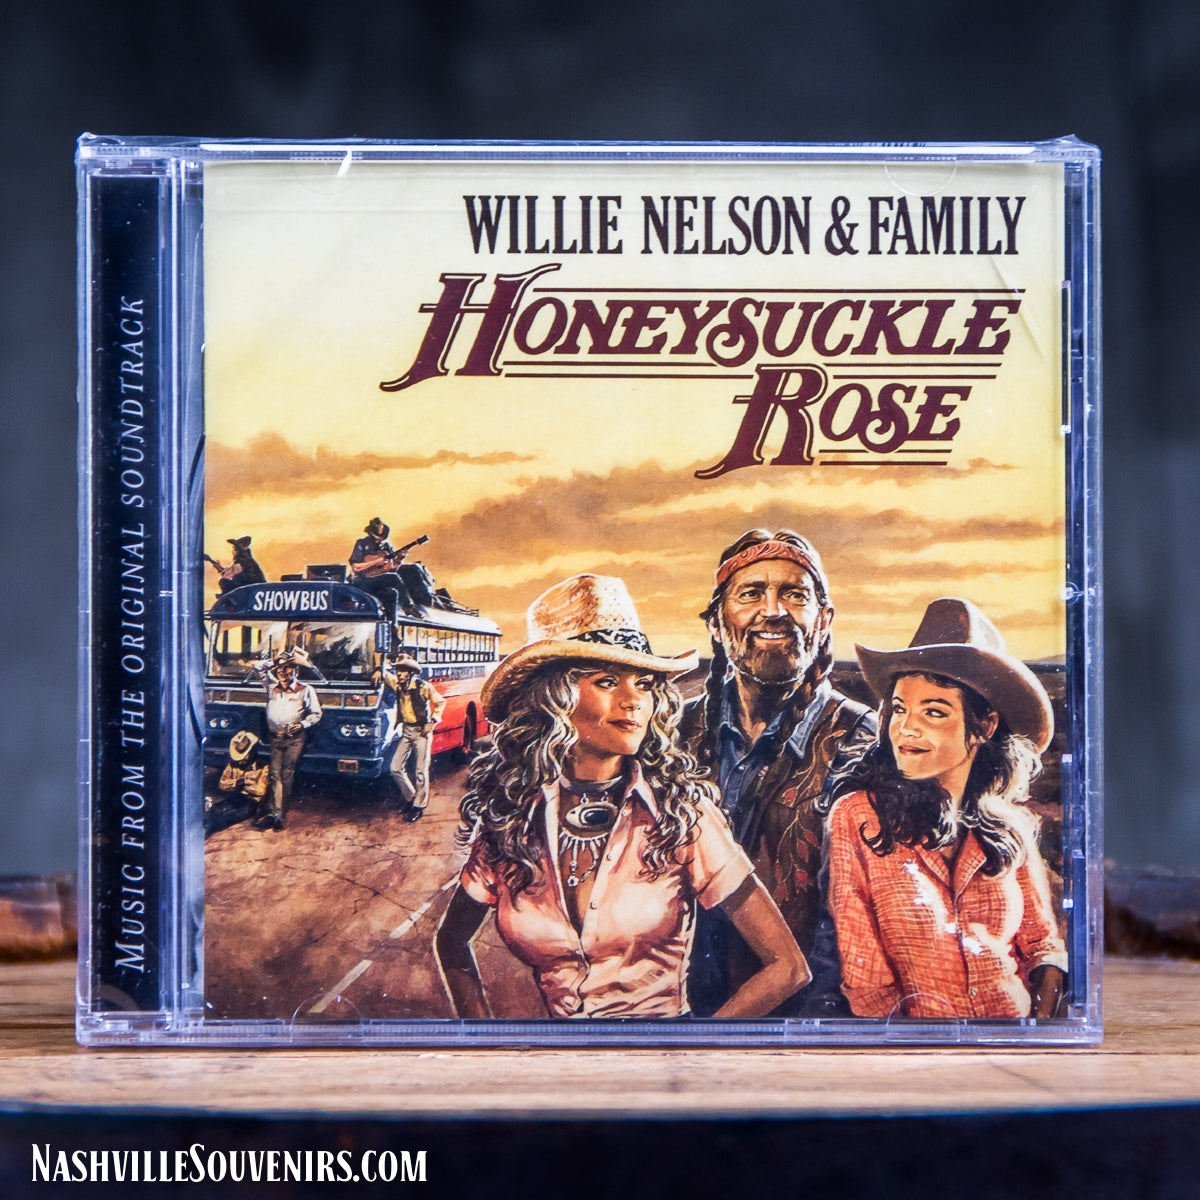 Willie Nelson and Family Honeysuckle Rose